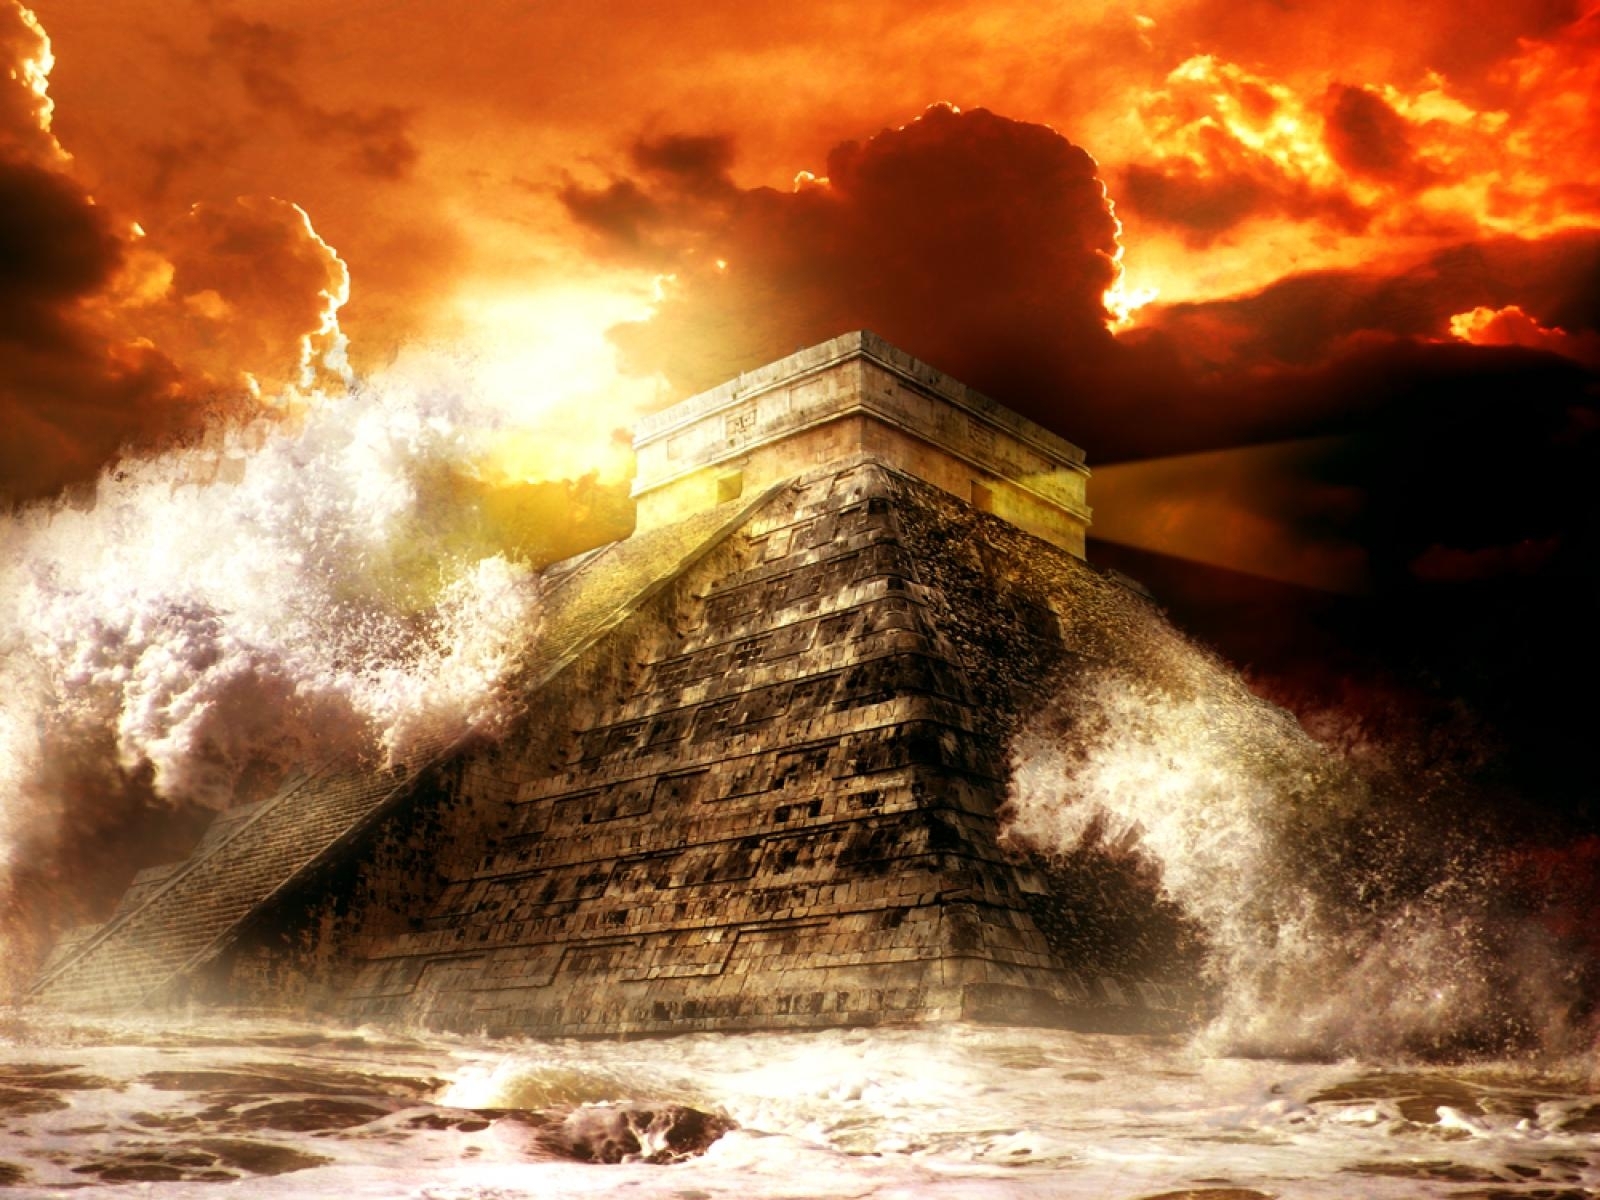 Конец света вики. Конец света 2012 Майя. Конец света 2012 21 декабря. Пирамида апокалипсиса. Катастрофа в древности.